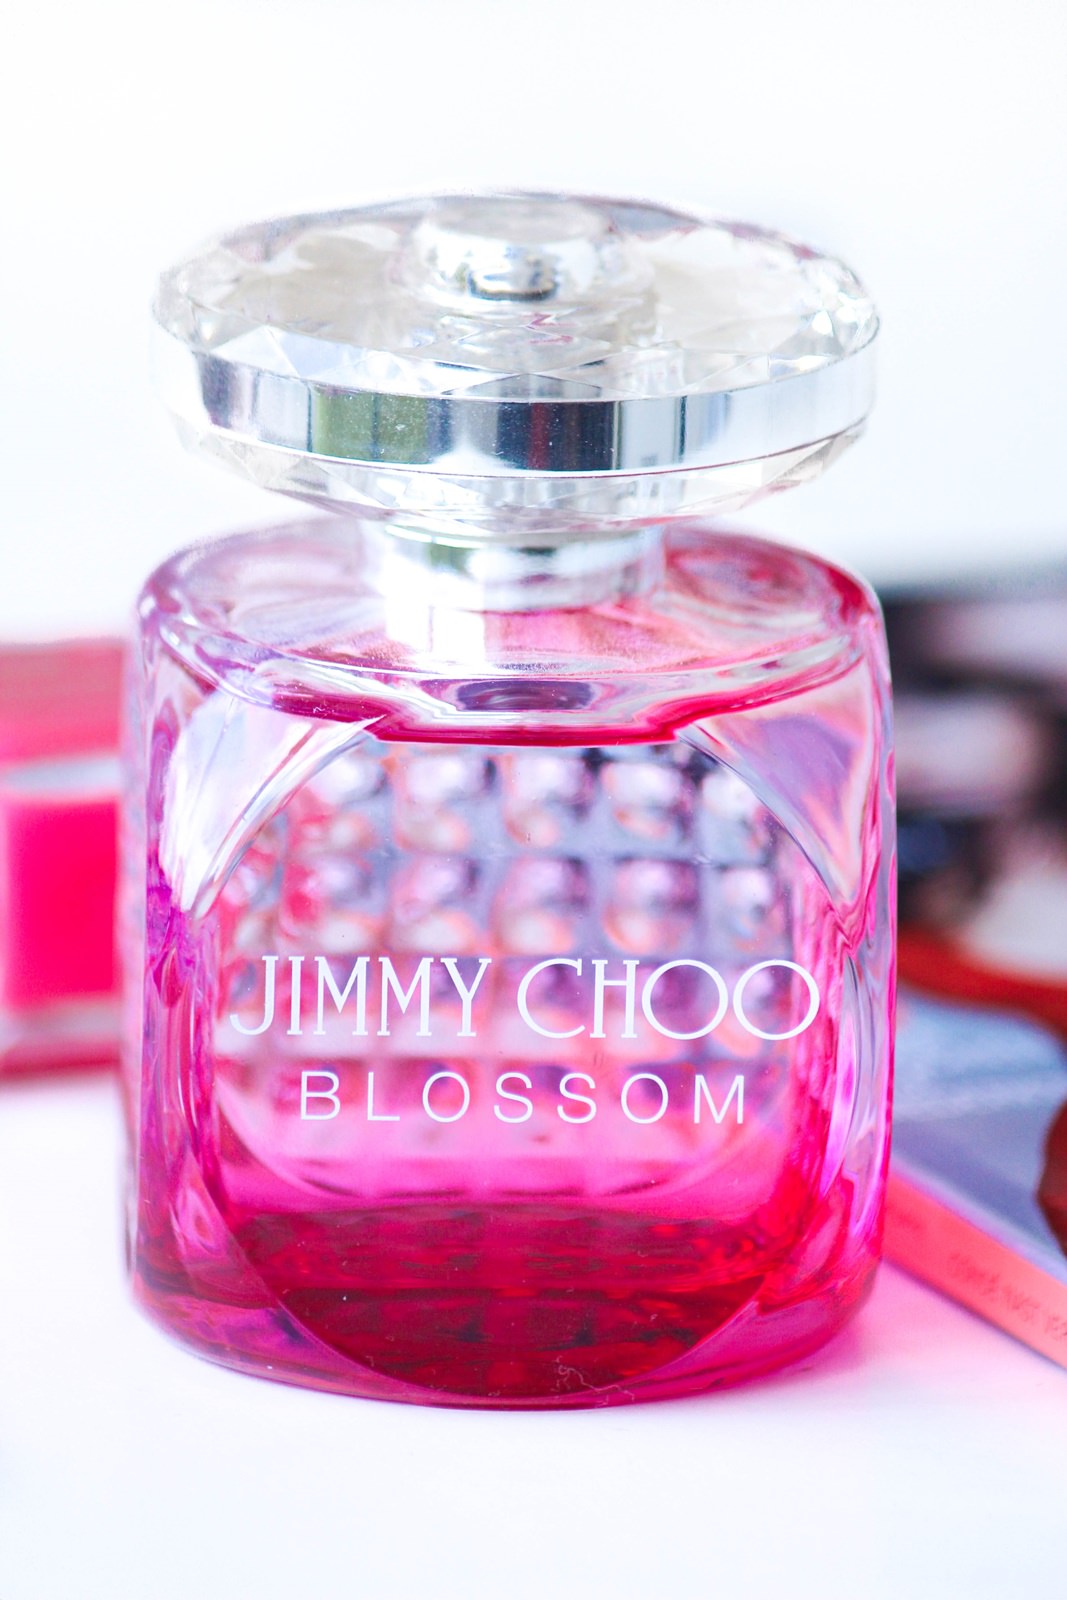 Des Belles Choses Parfum Review - Jimmy Choo Blossom 2